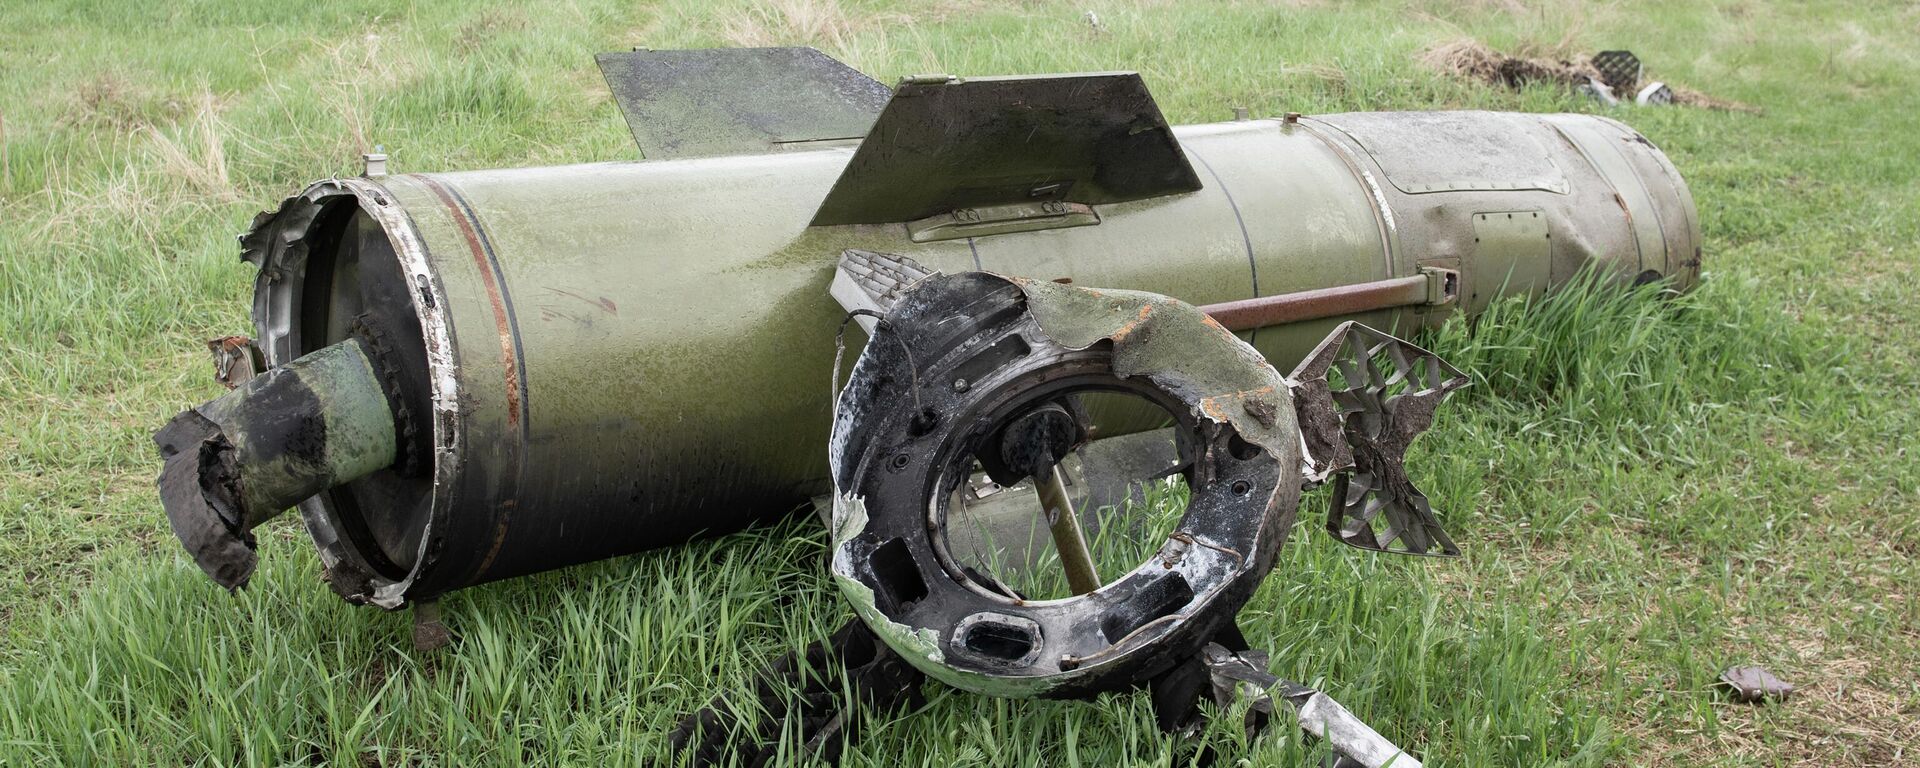 Míssil ucraniano Tochka-U caído no território do hospital militar na região de Zaporozhie, 21 de abril de 2022 - Sputnik Brasil, 1920, 23.04.2022